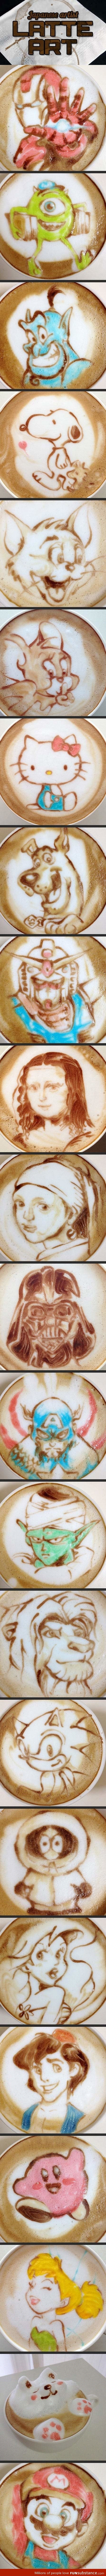 Japanese latte art